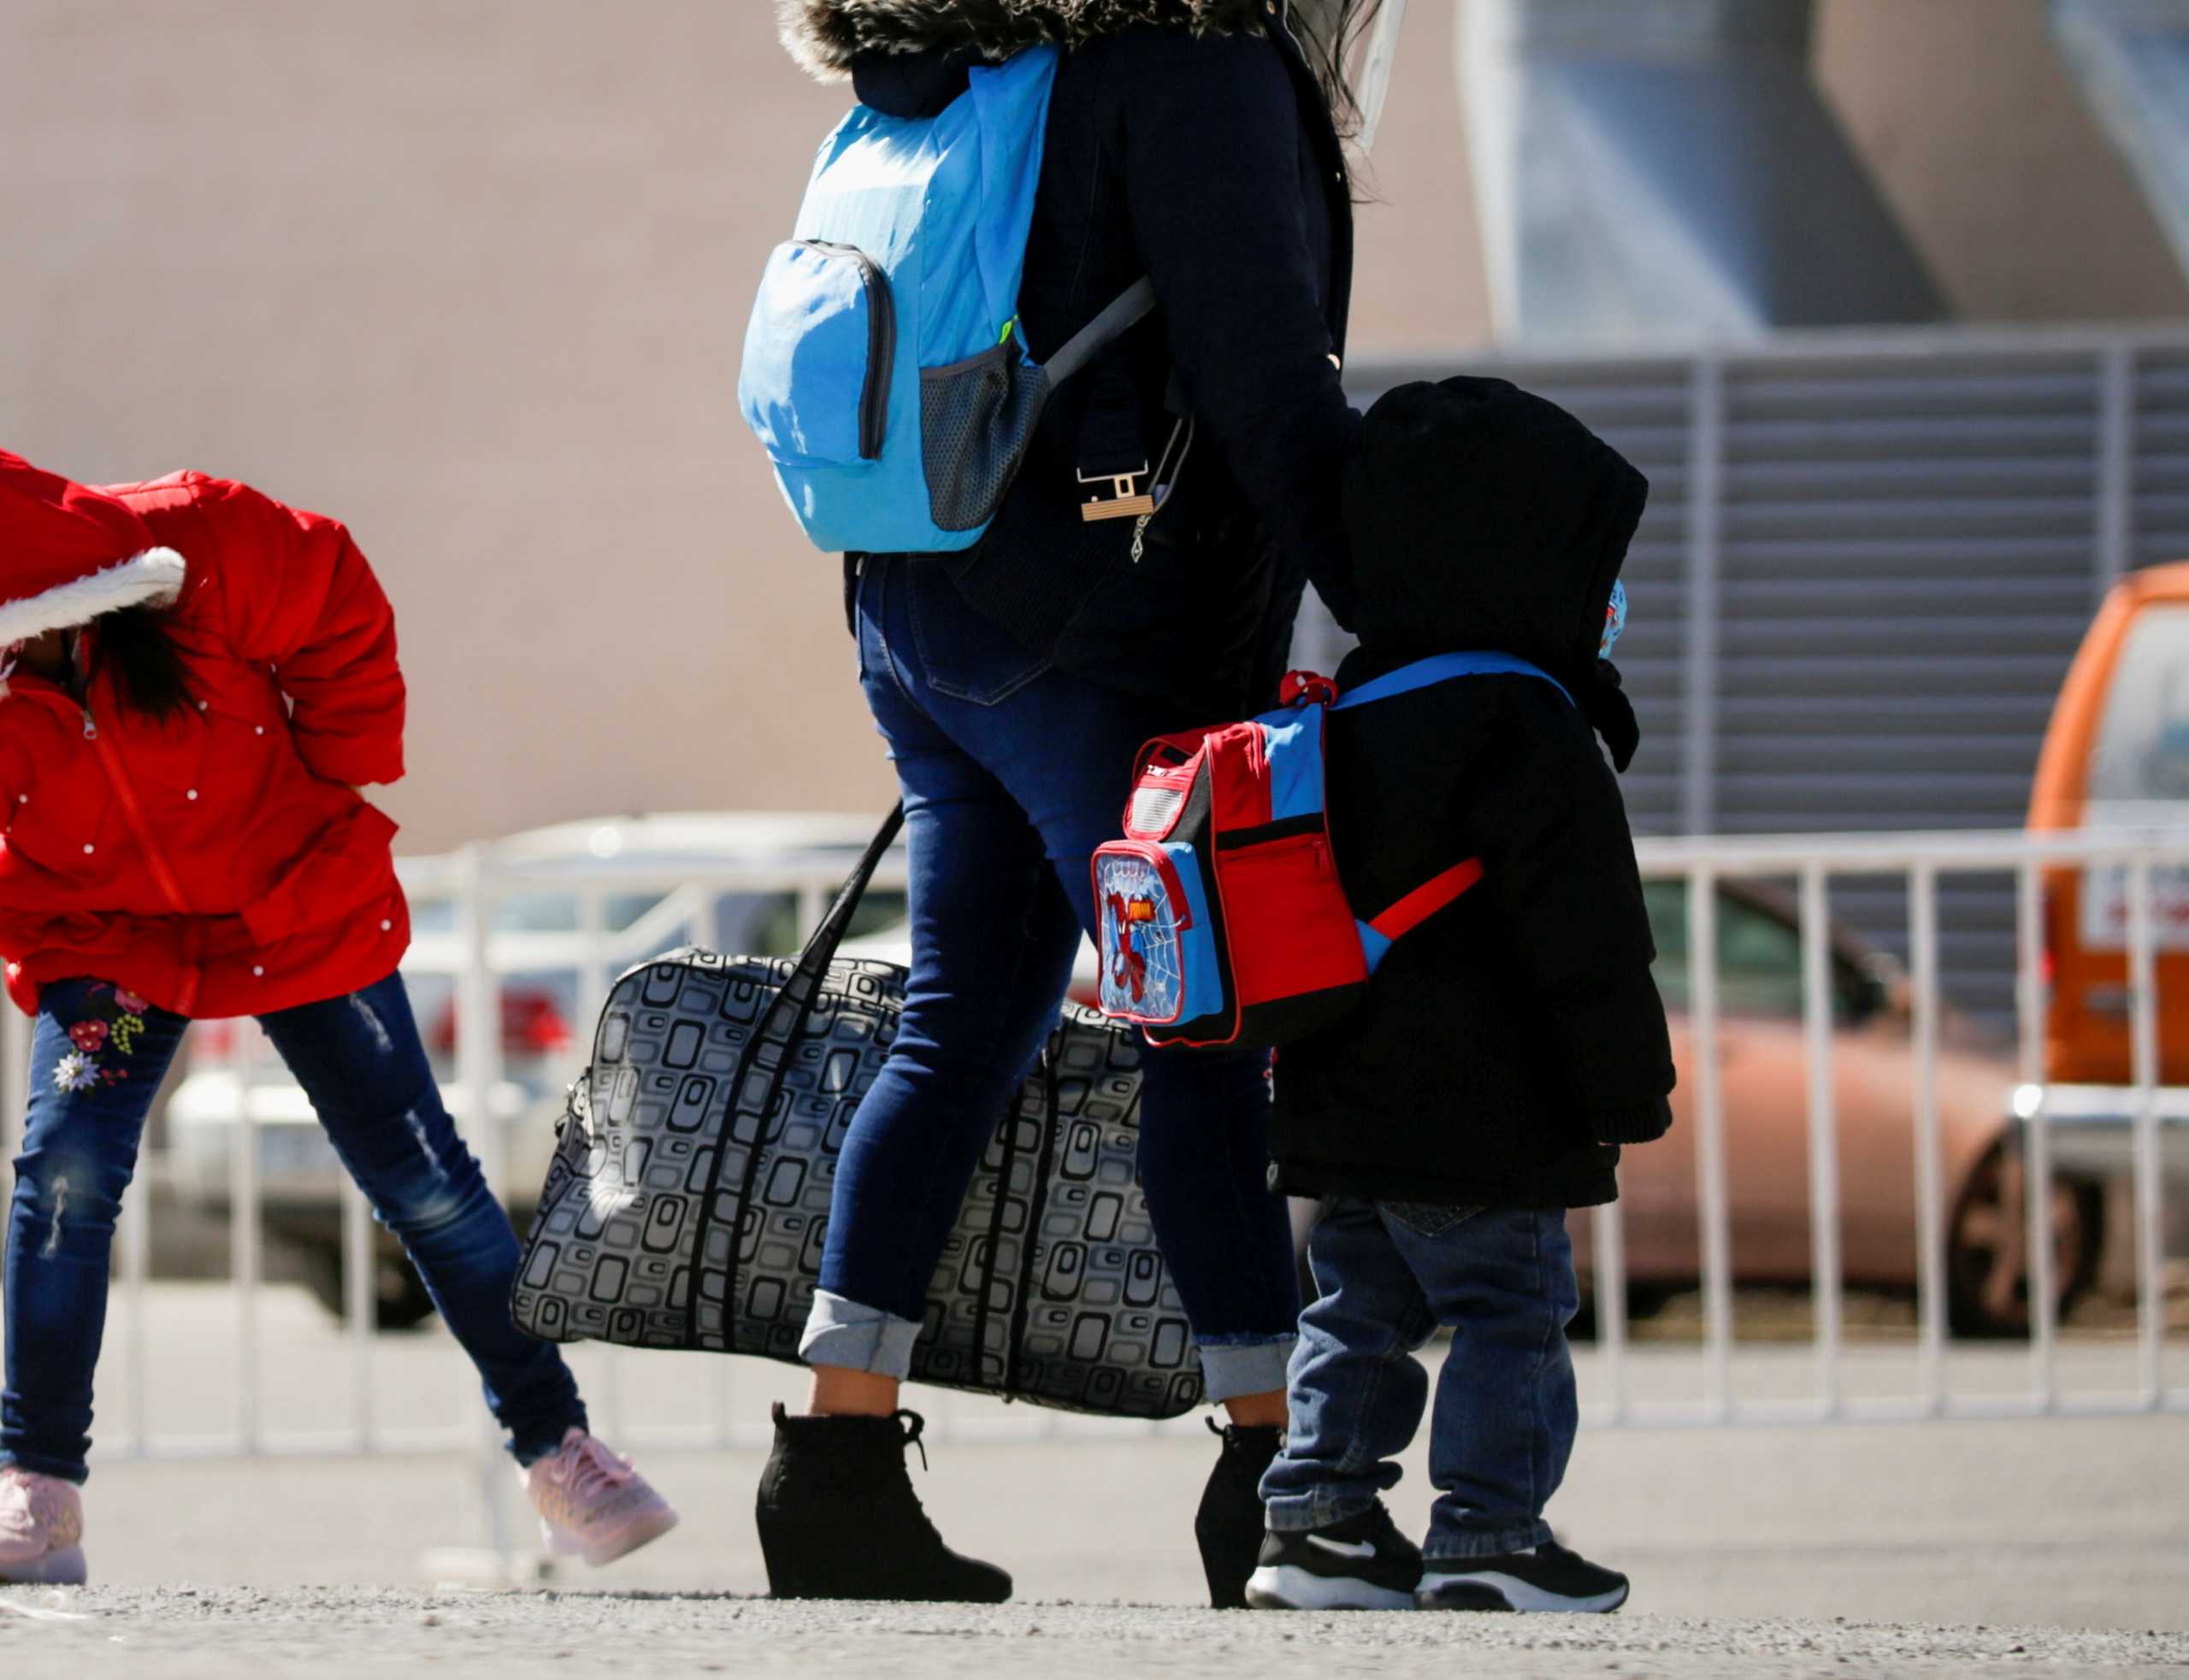 Καταδίκη της Ουγγαρίας για παραβίαση των δικαιωμάτων οικογένειας αιτούντων άσυλο με μικρά παιδιά